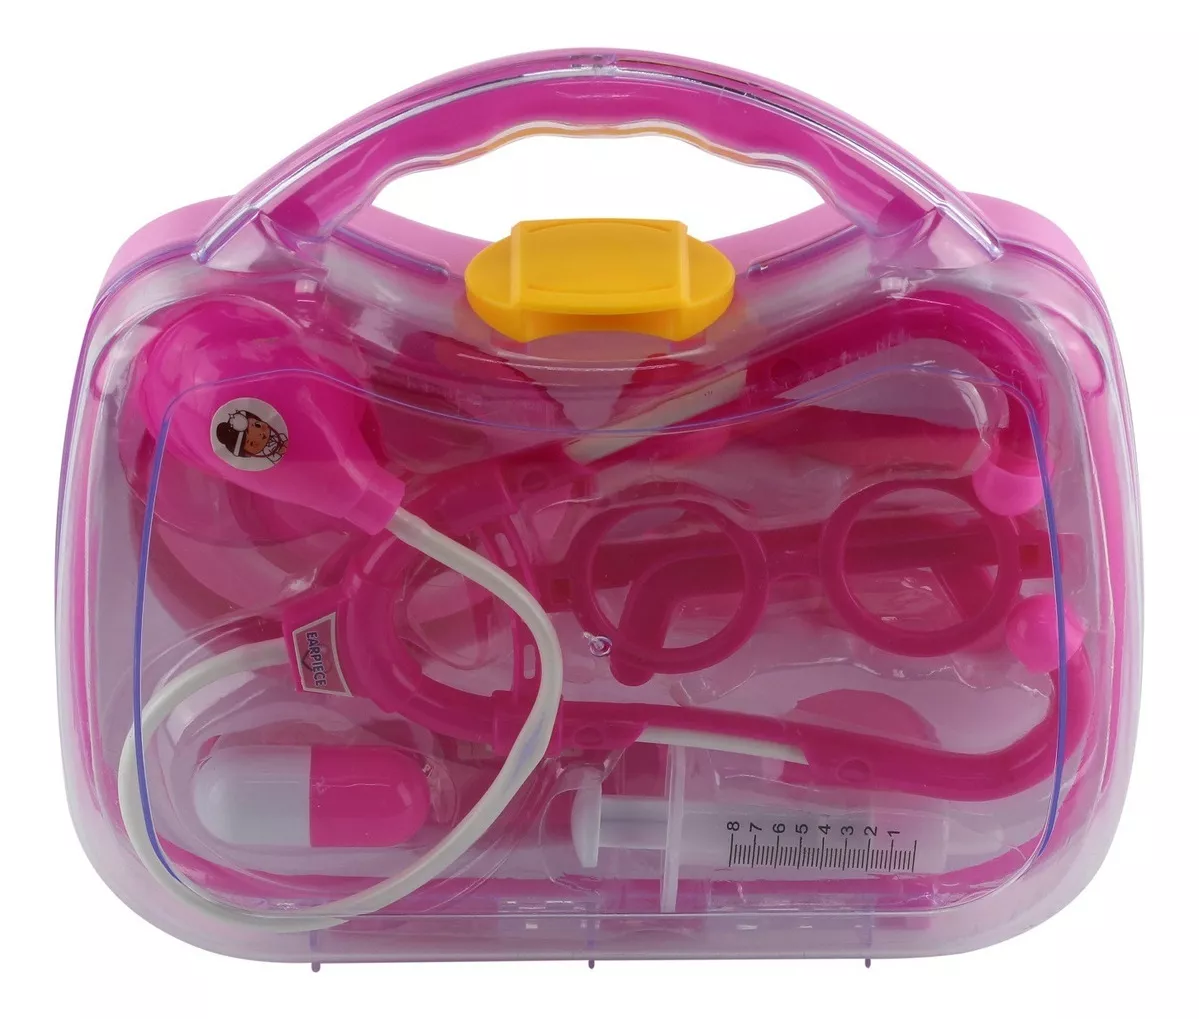 Segunda imagem para pesquisa de maleta medico infantil